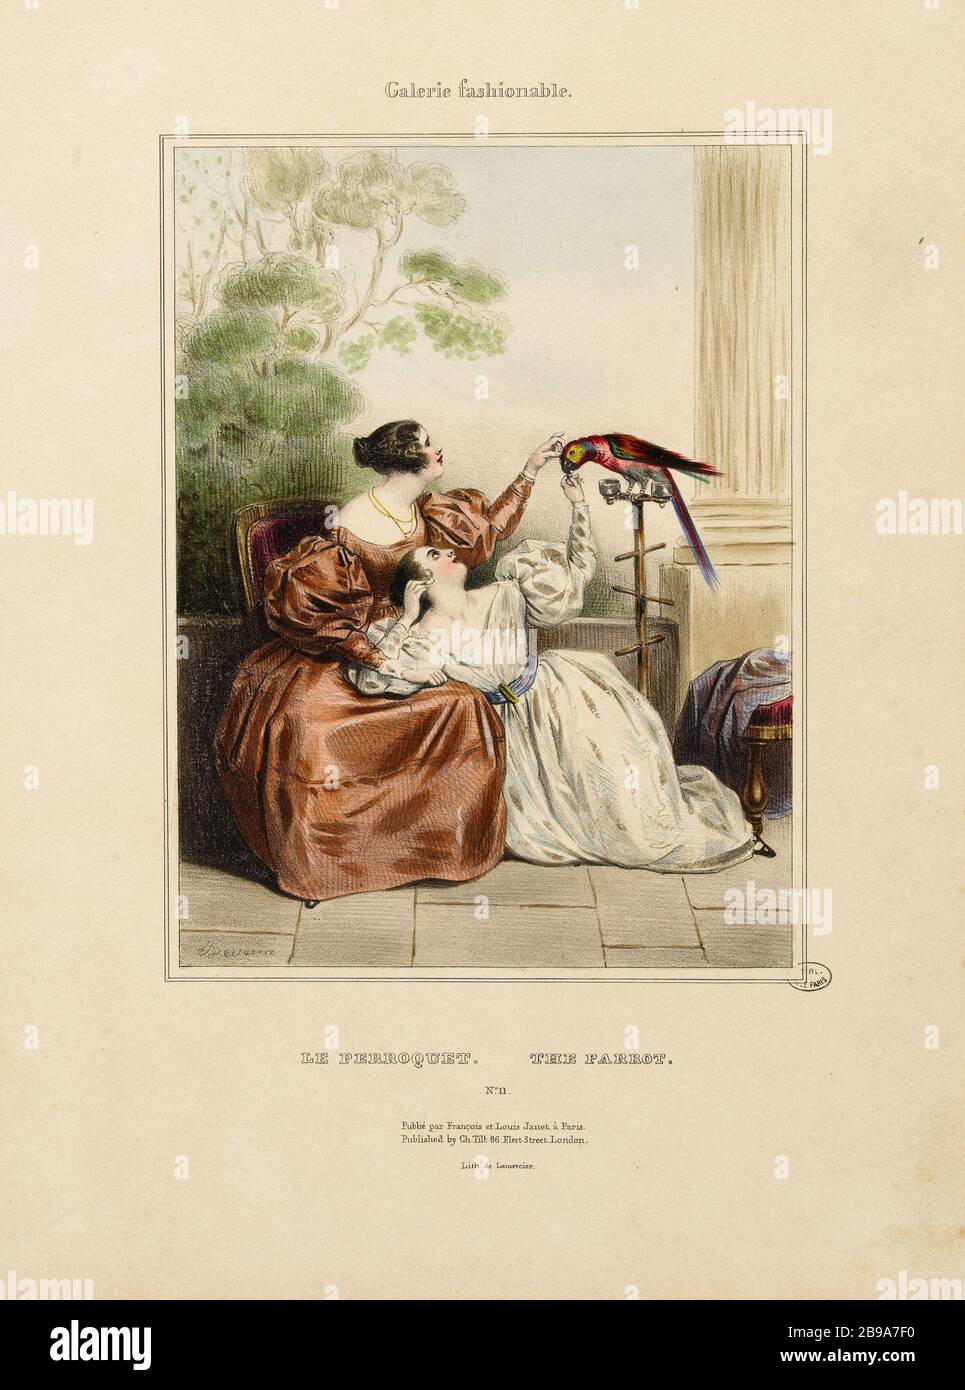 Fashionable Gallery: parrot Achille Devéria (1800-1857) et Rose Joseph Lemercier (1803-1887). Galerie Fashionable : le perroquet. 1832. Lithographie. Paris, musée Carnavalet. Stock Photo